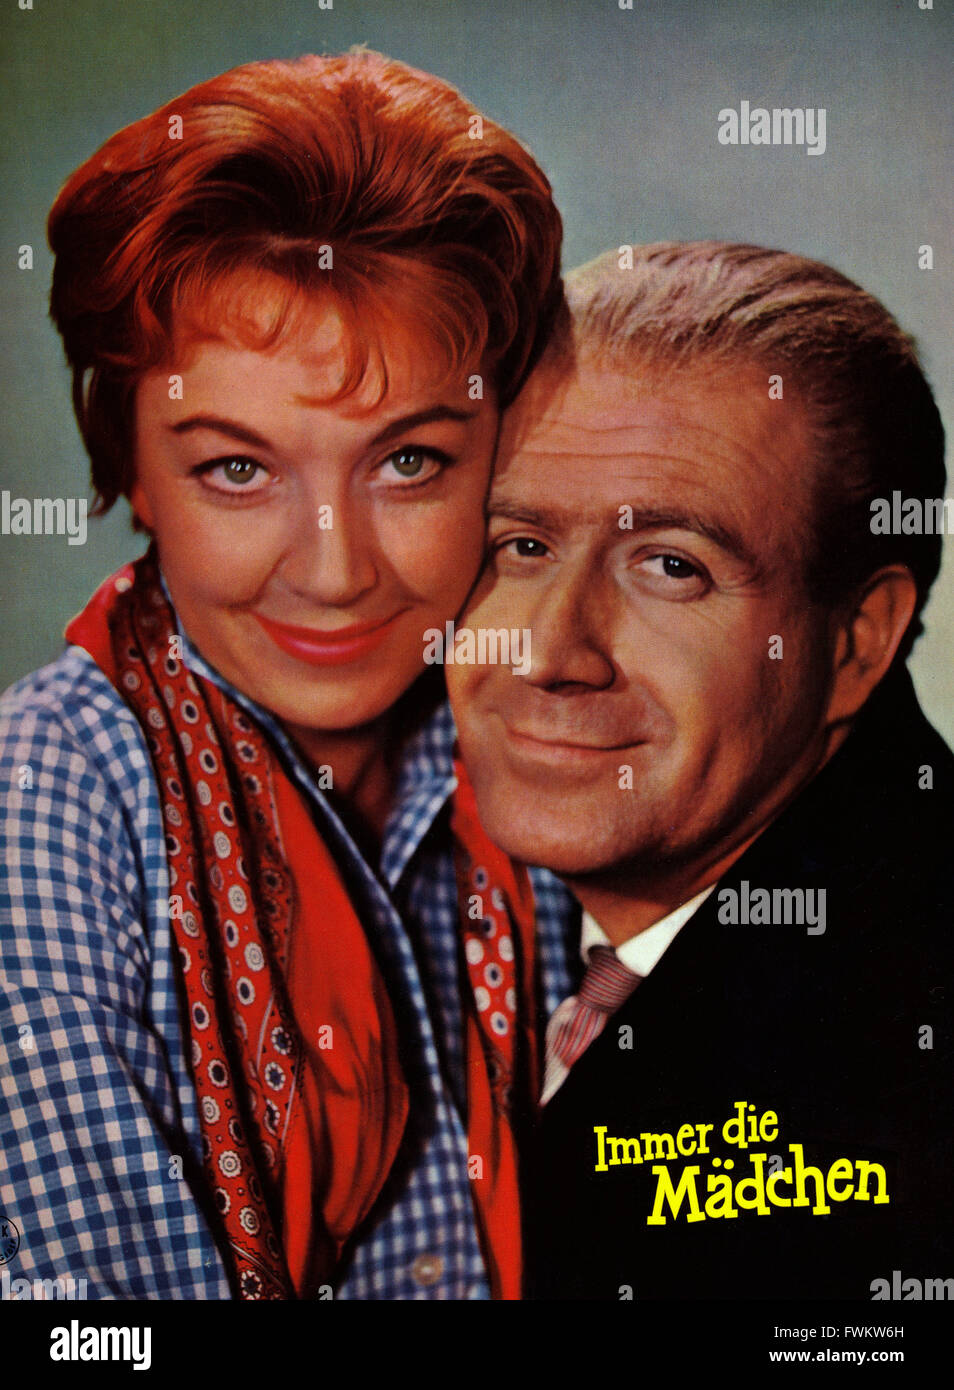 ... Österreich 1959, Regie: Fritz Remond, Darsteller: <b>Christine Görner</b> - immer-die-mdchen-sterreich-1959-regie-fritz-remond-darsteller-christine-FWKW6H